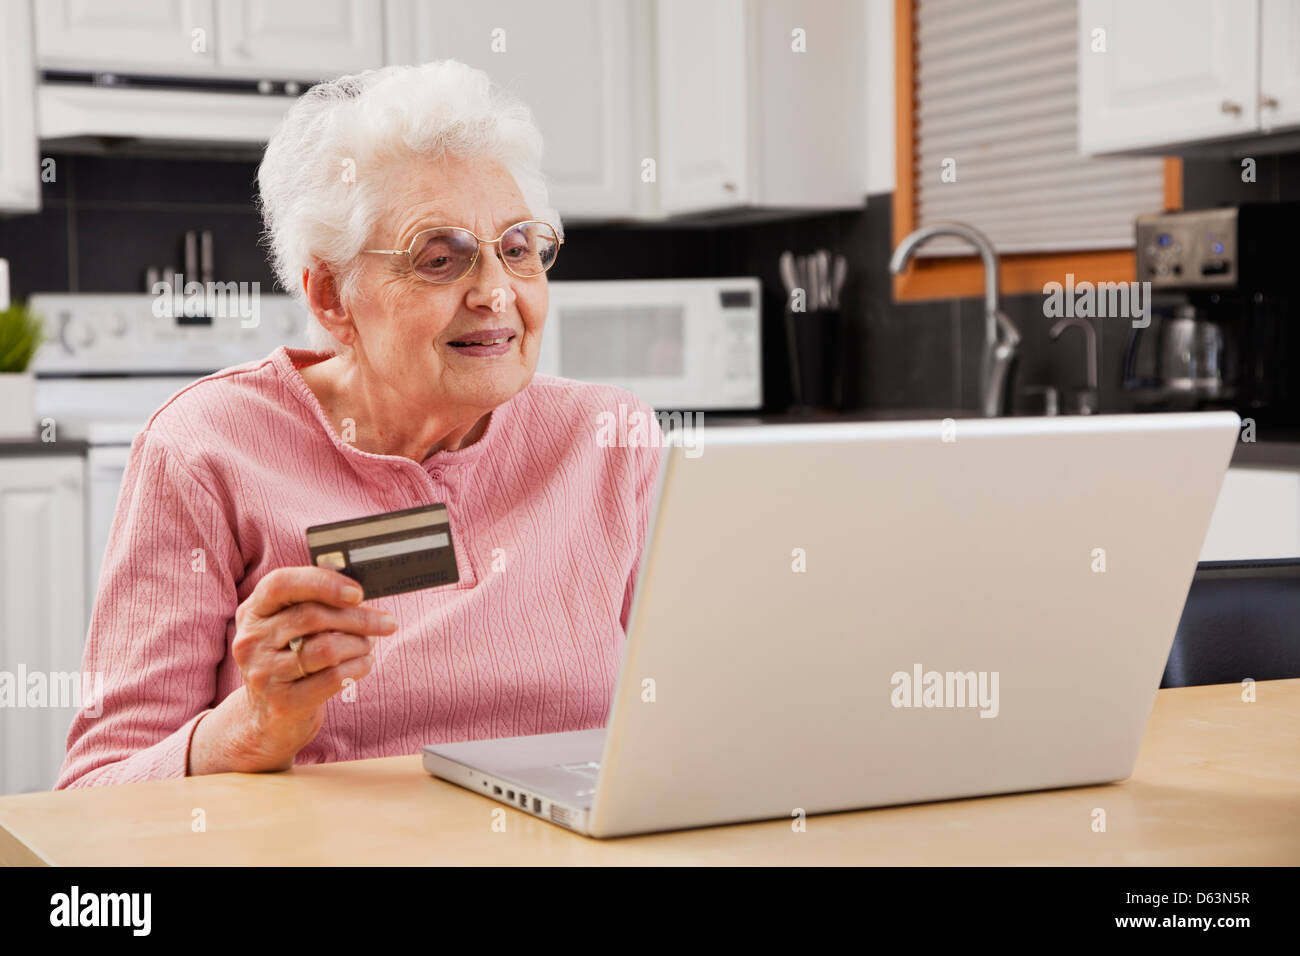 Senior woman shopping online Stock Photo